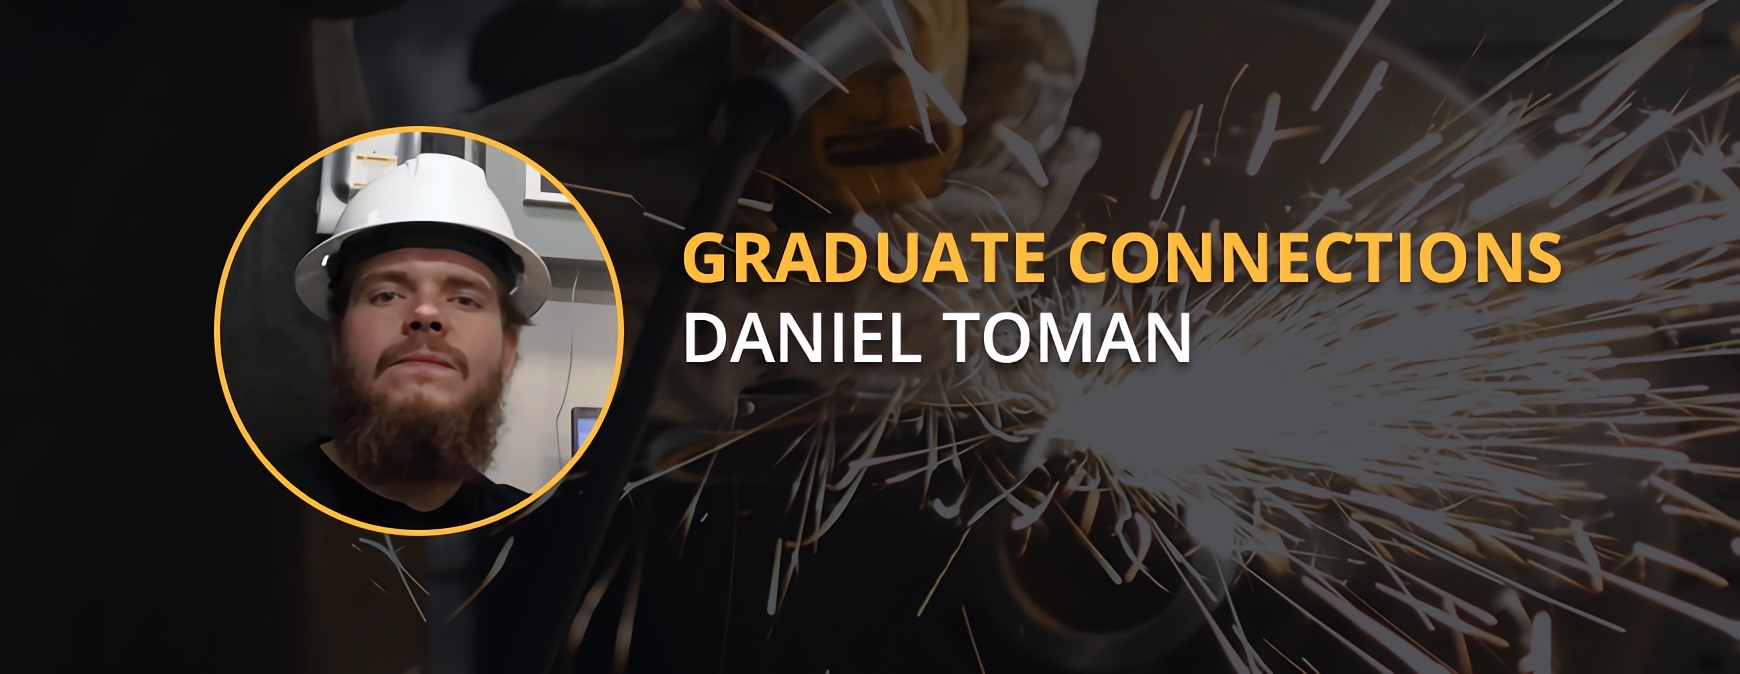 Daniel Toman Graduate Connections